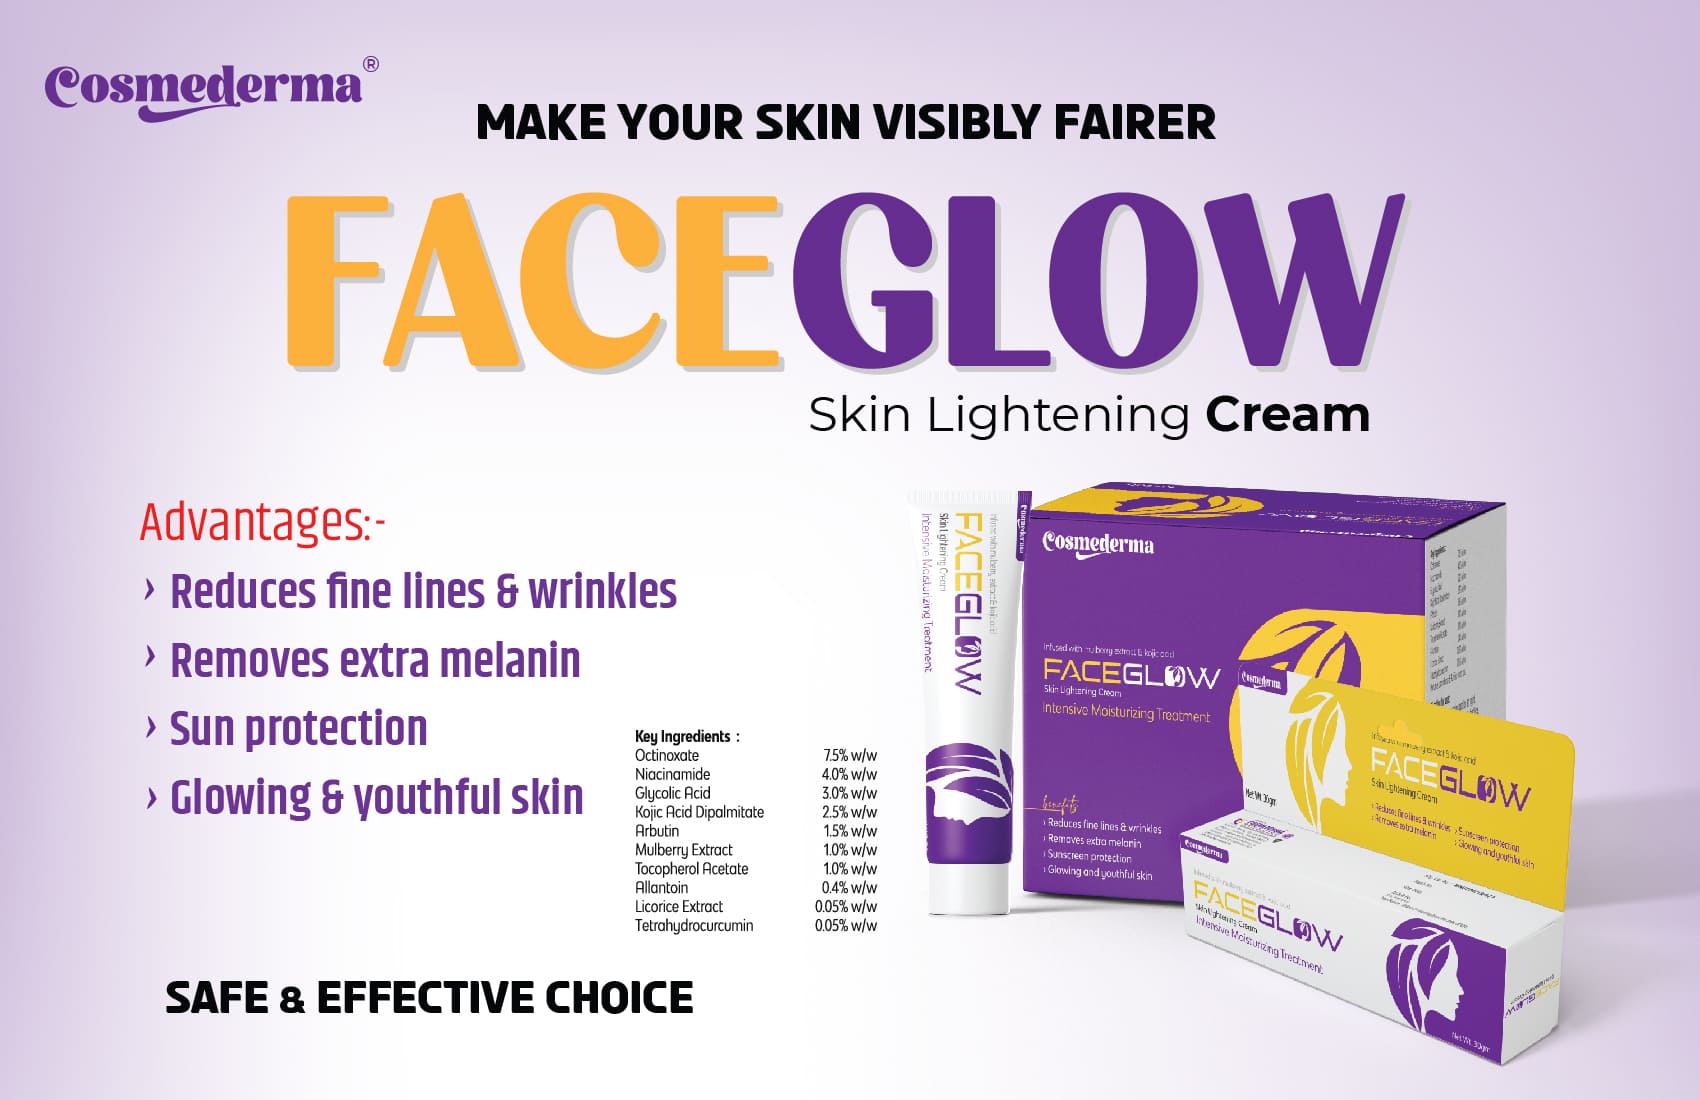 Skin Lightening Cream: Faceglow Cream